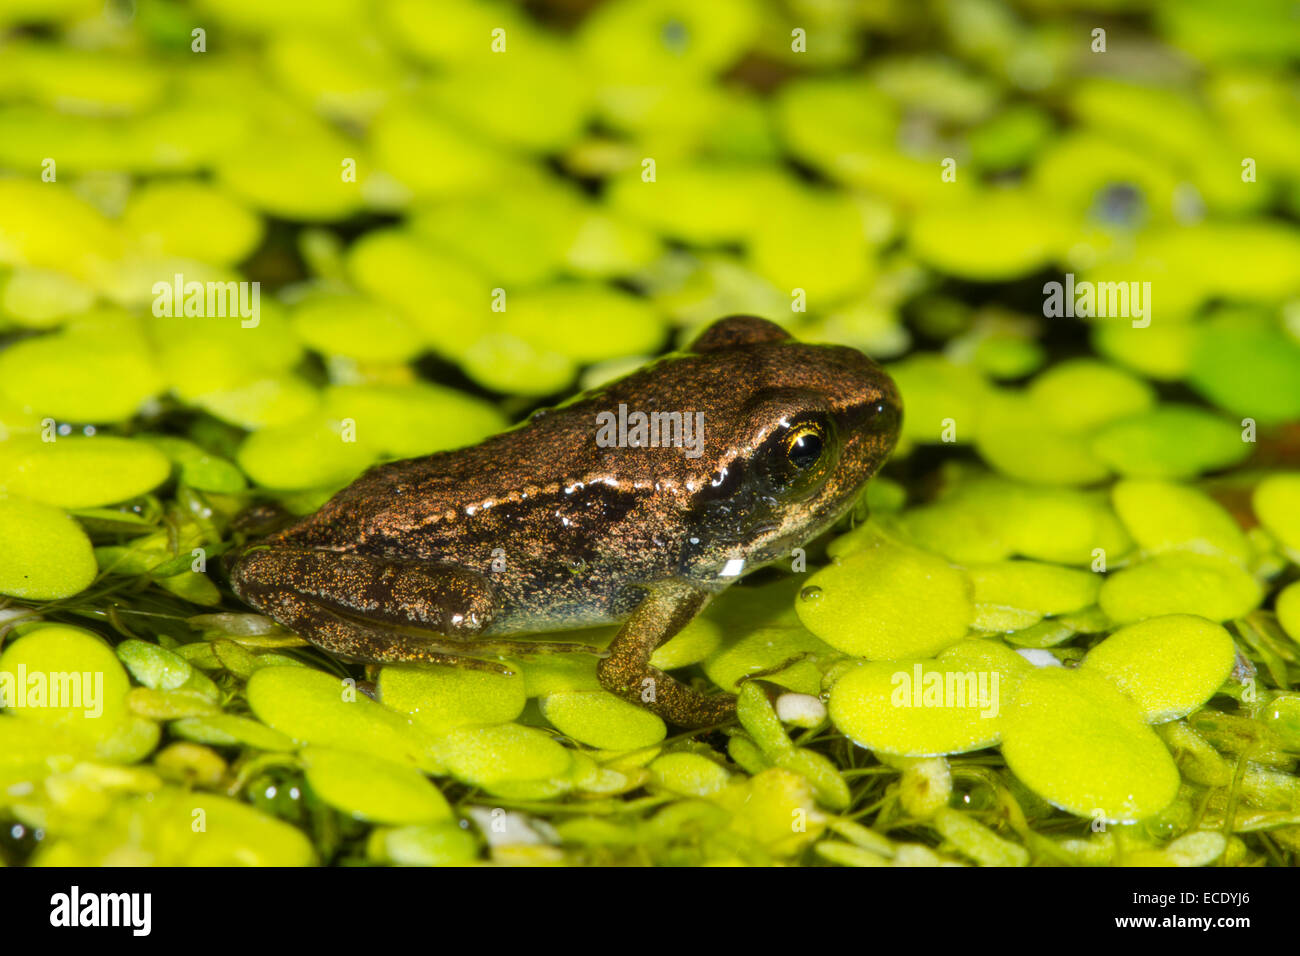 Rana comune (Rana temporaria) froglet, sulle lenti d'acqua (Lemna sp.) in un laghetto in giardino. Seaford, Sussex, Inghilterra. Luglio. Foto Stock